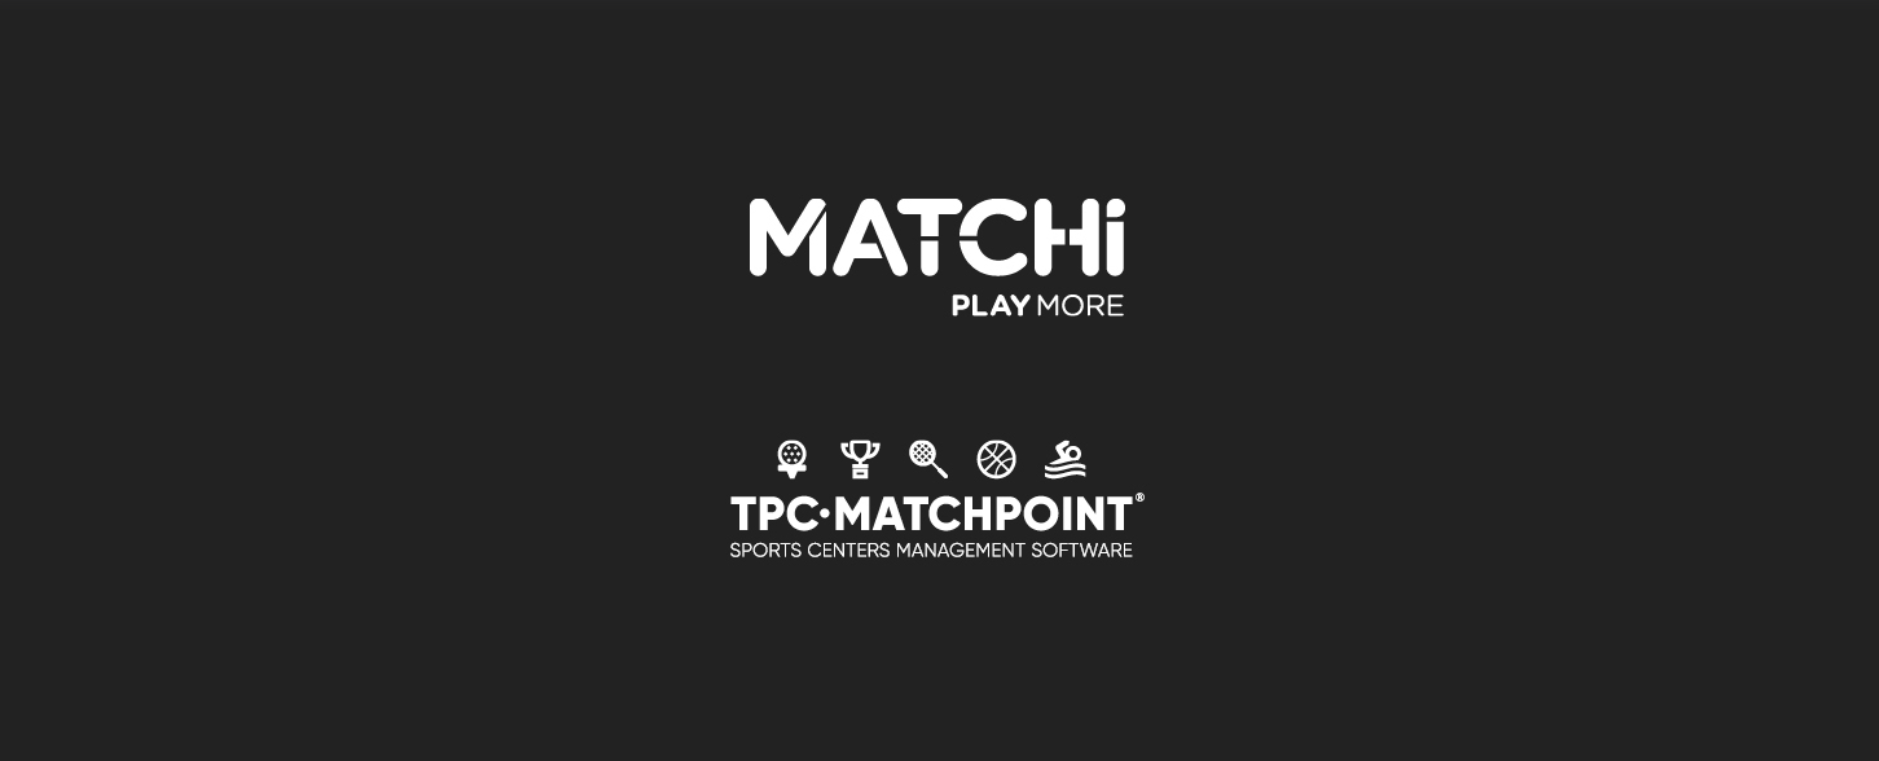 A TPC Matchpoint faz parceria com a MATCHi, criando uma das maiores redes de esportes de raquete do mundo!